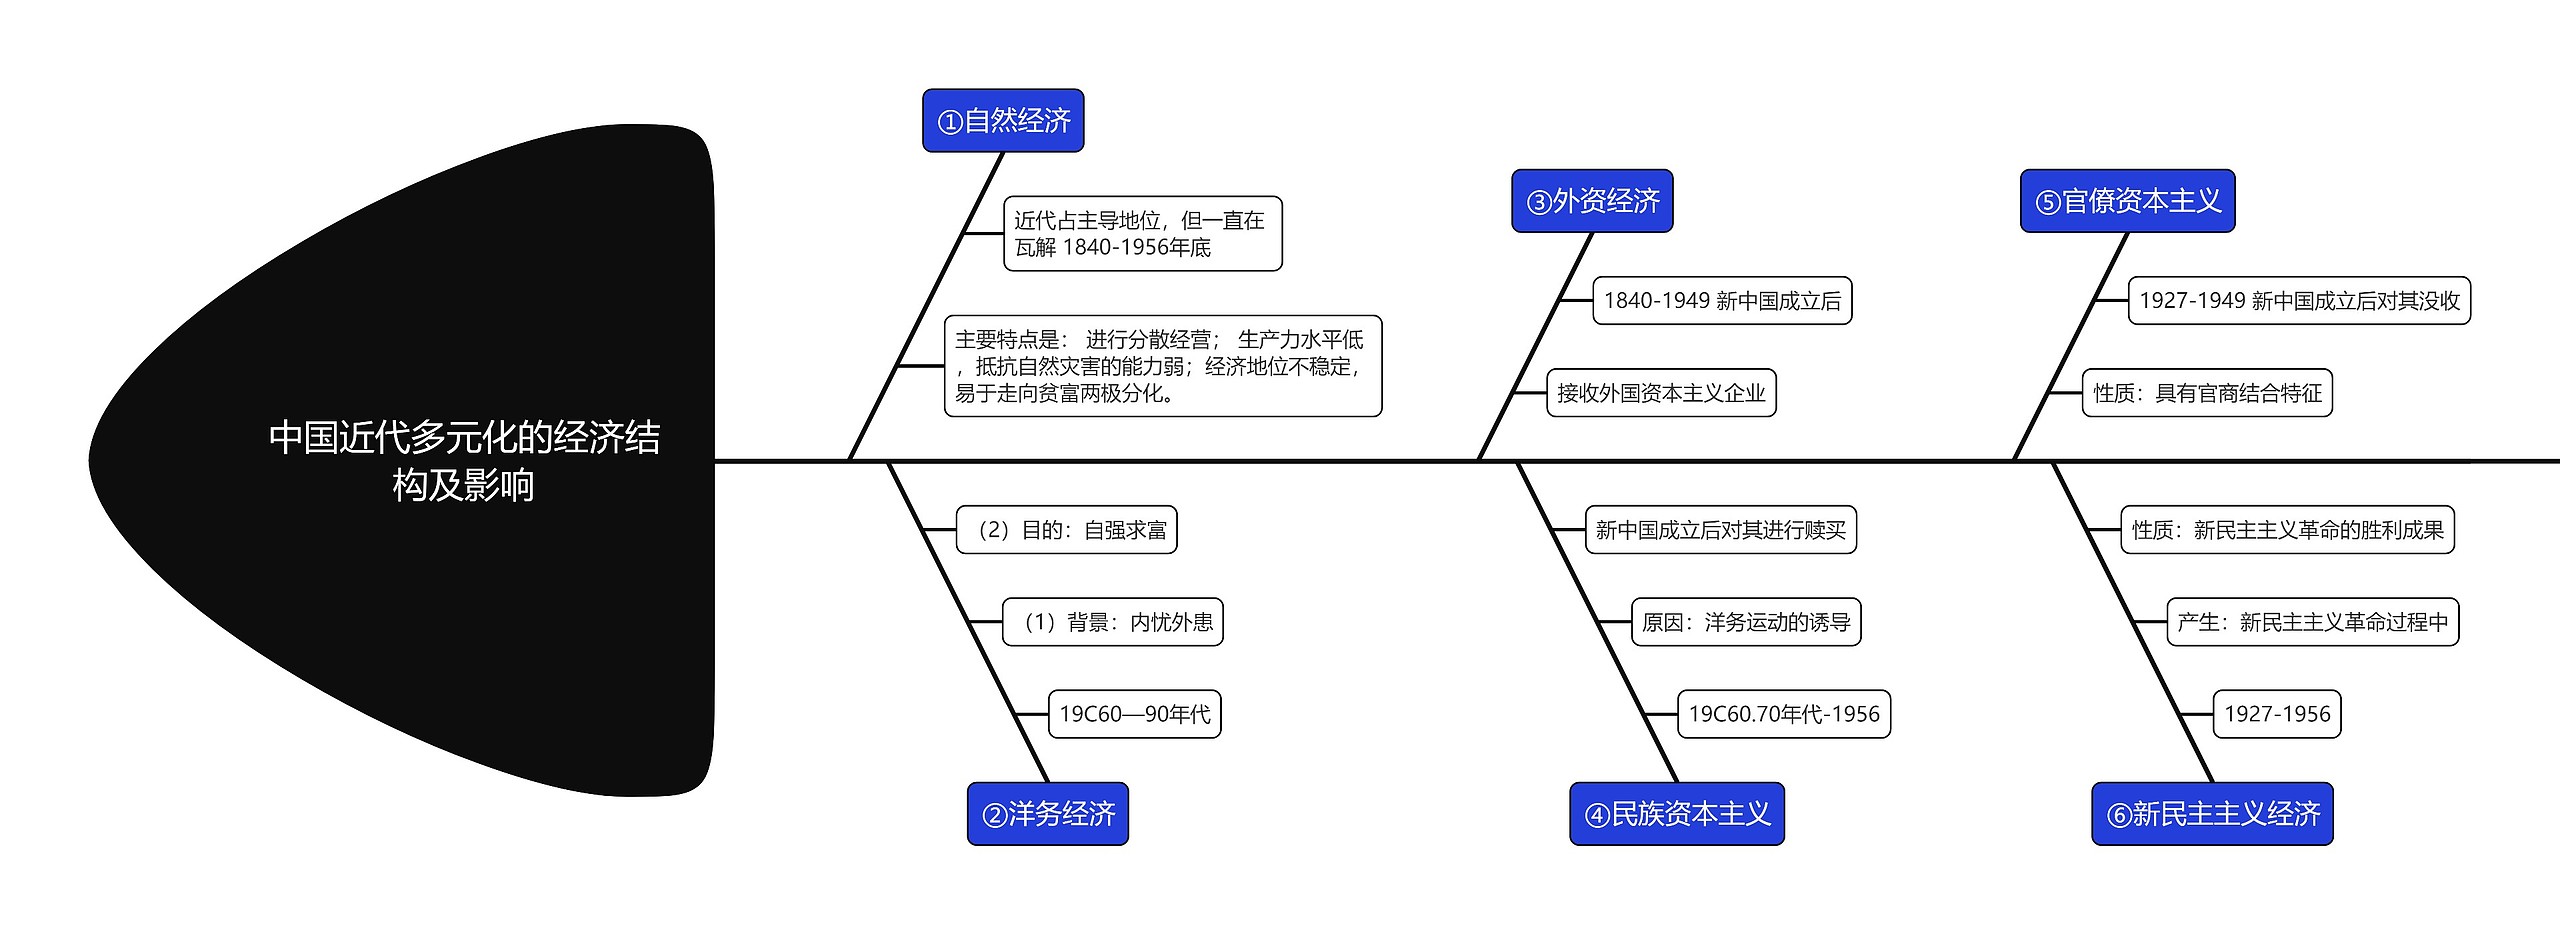 初中历史中国近代多元化的经济结构及影响鱼骨图思维导图